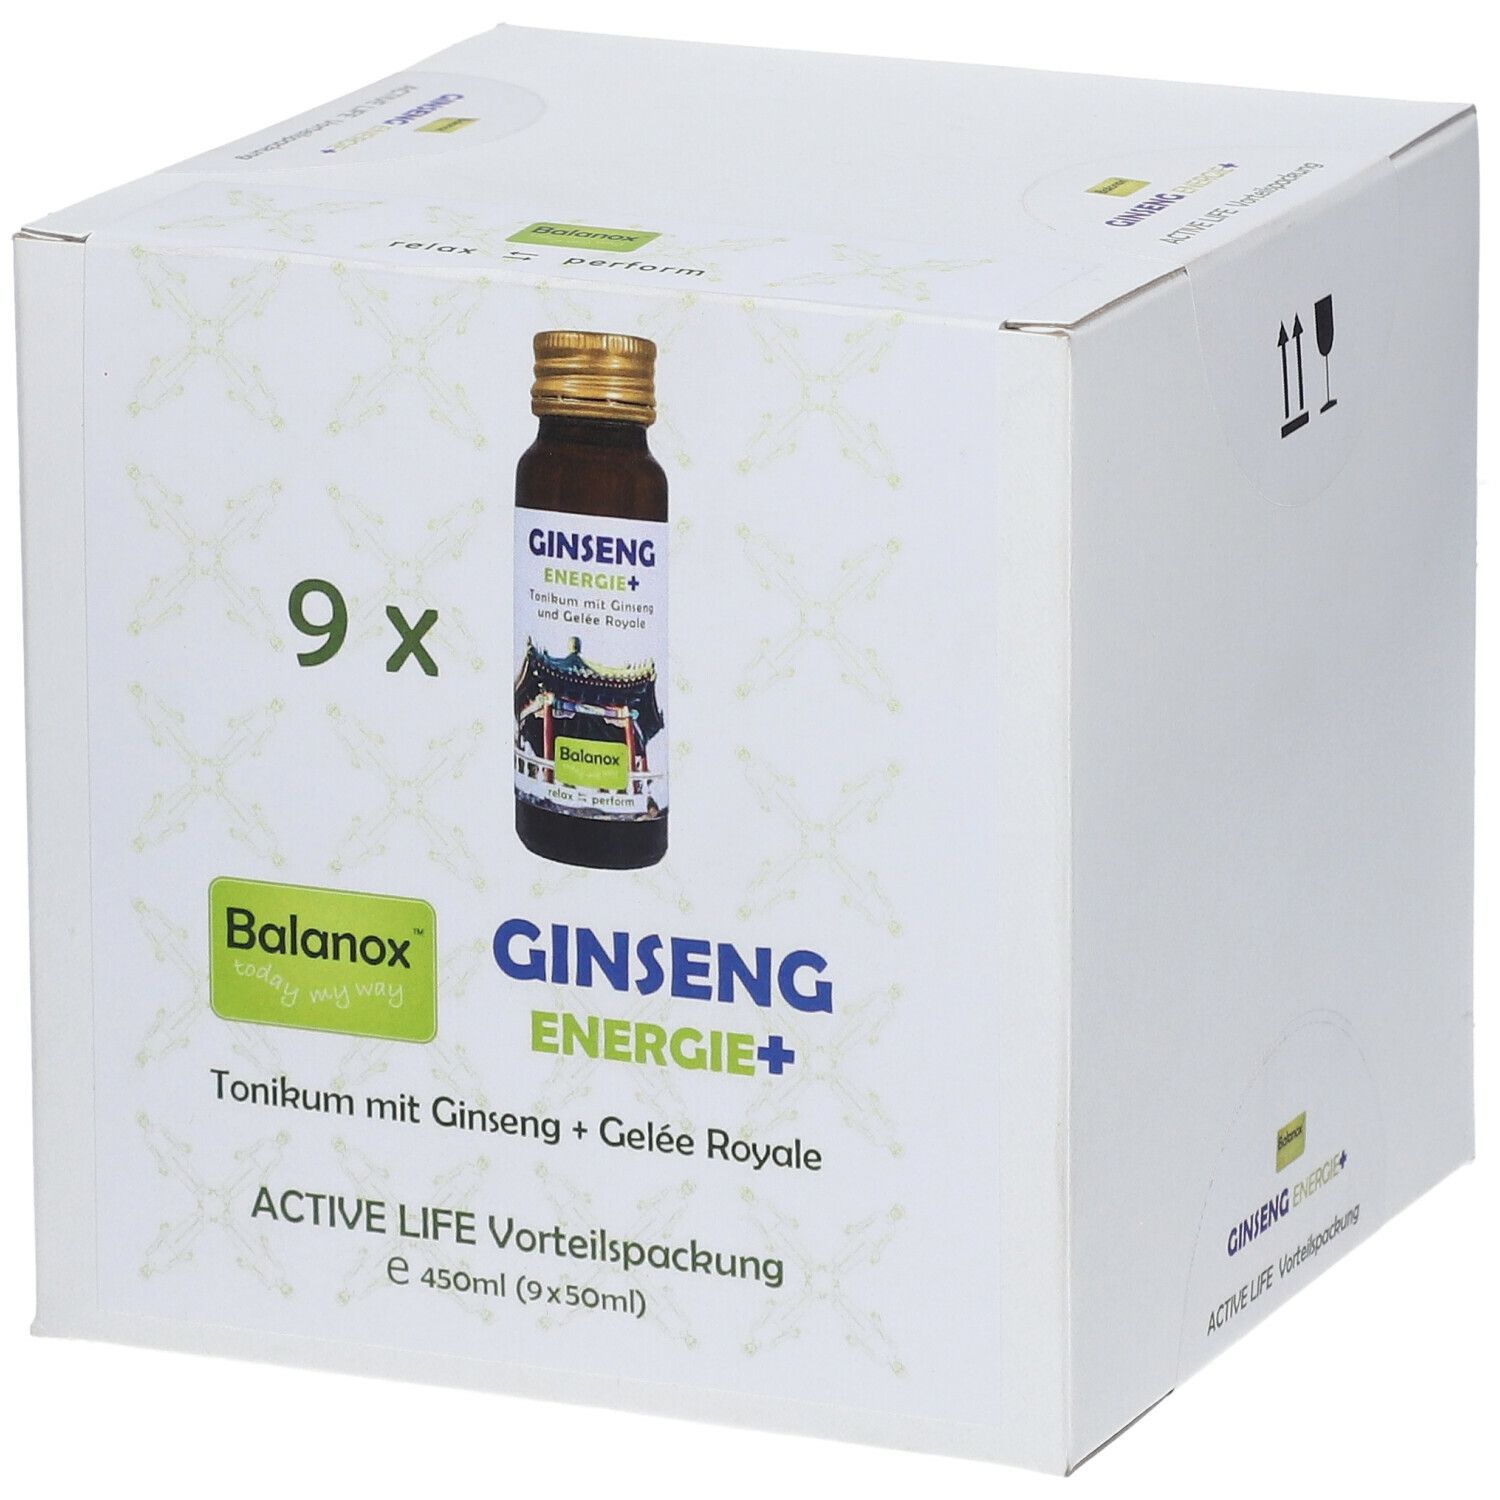 Balanox™ Ginseng Energie+